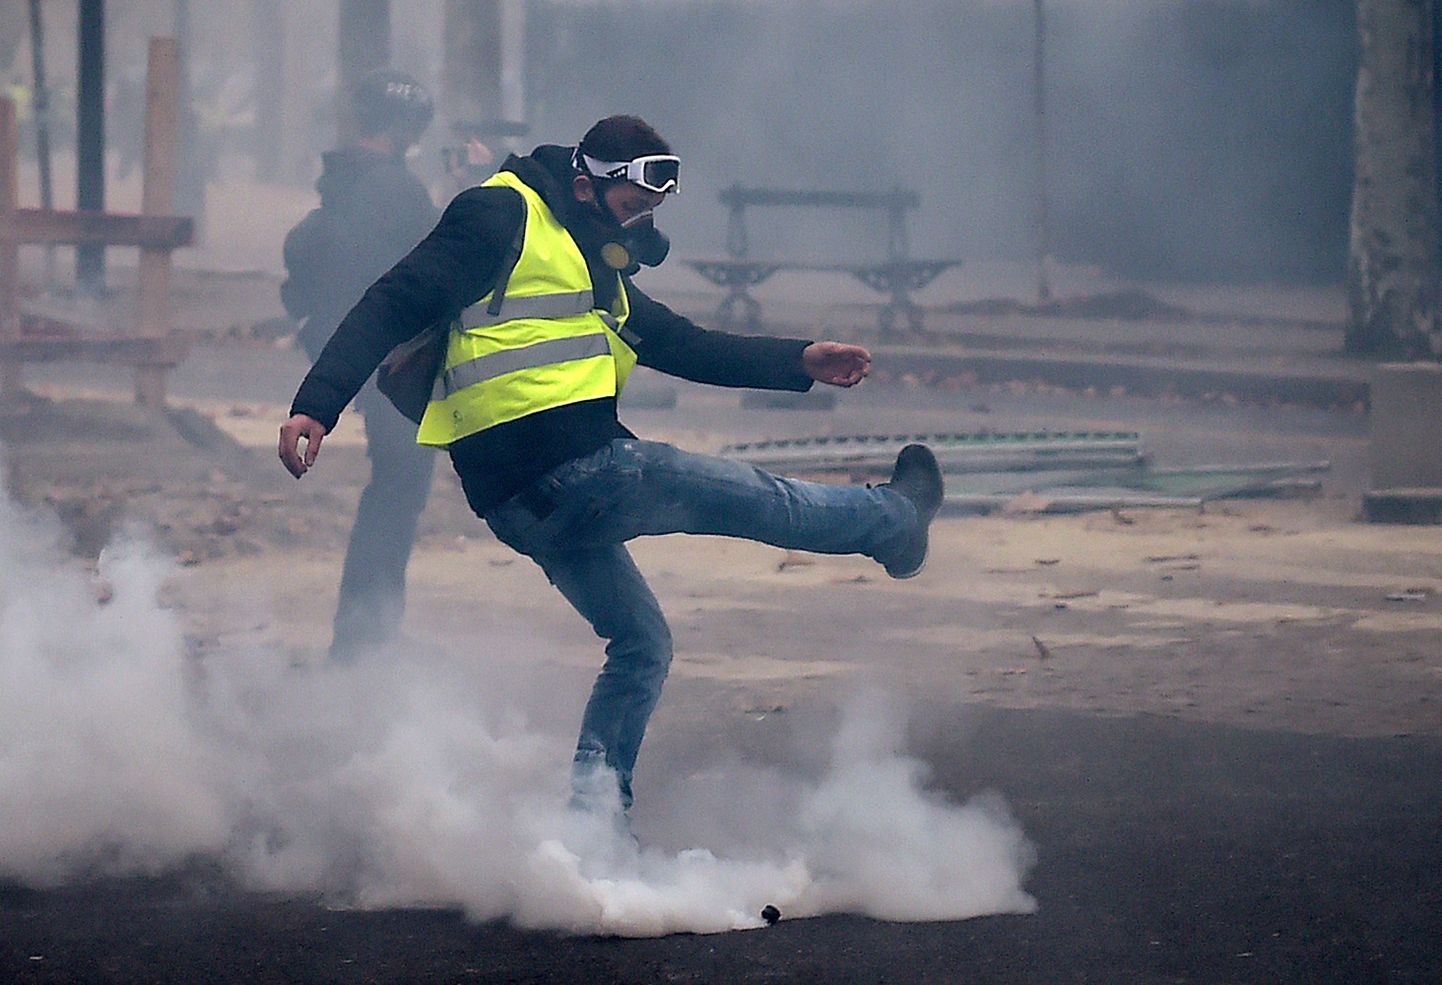 Parīzē policija pret protestētājiem pielieto asaru gāzi